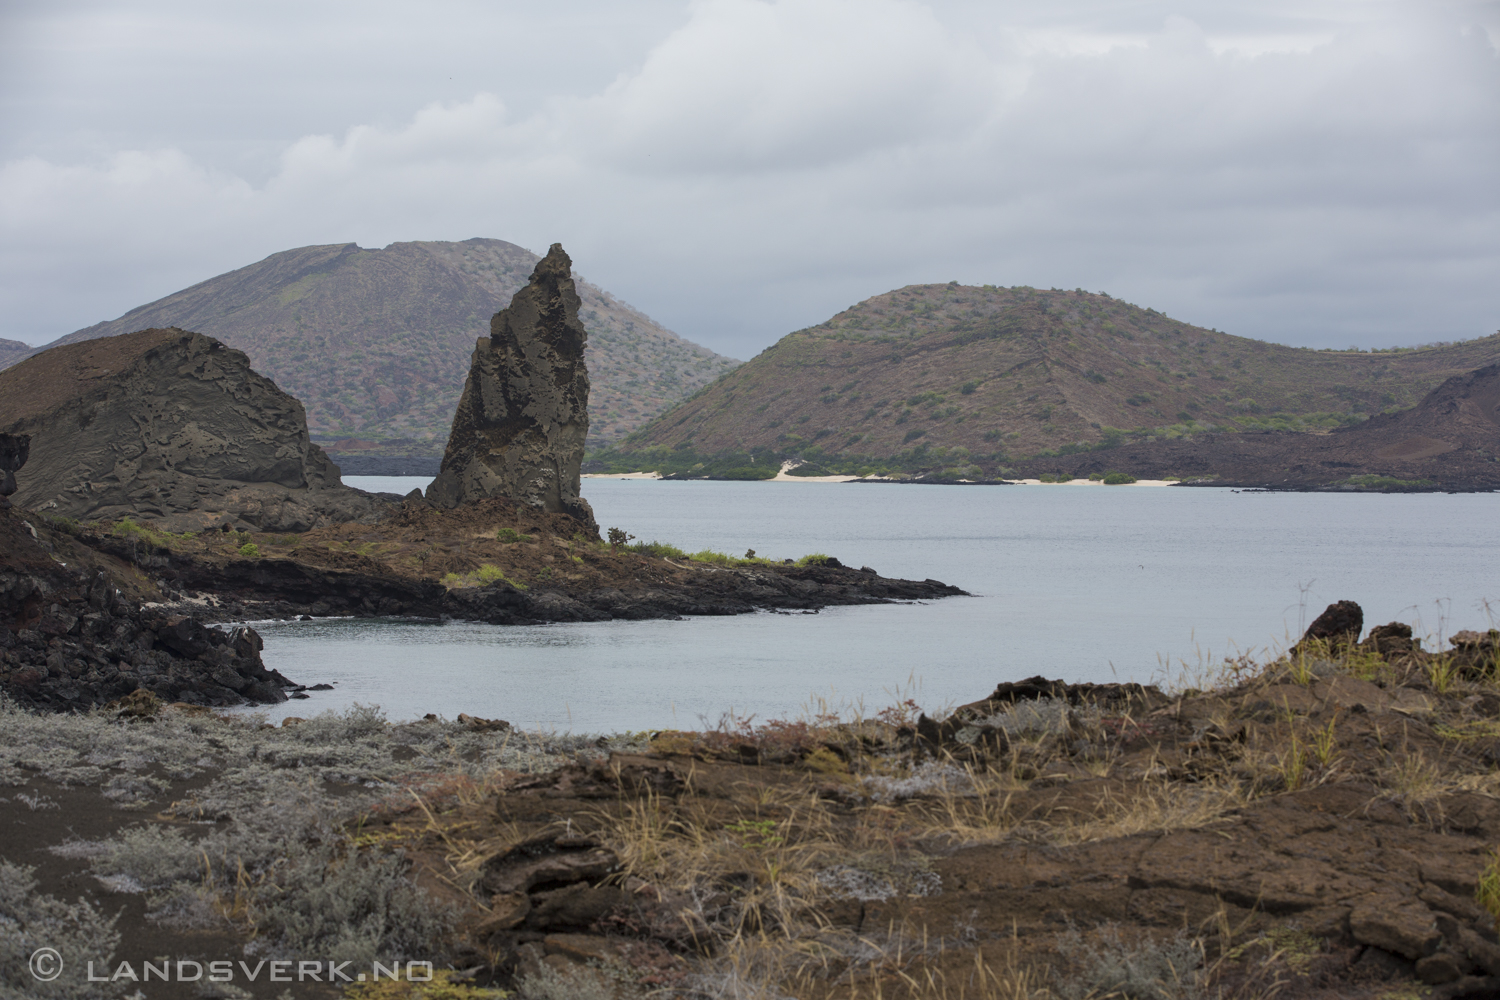 Bartolome Island, Galapagos. 

(Canon EOS 5D Mark III / Canon EF 70-200mm f/2.8 L IS II USM)